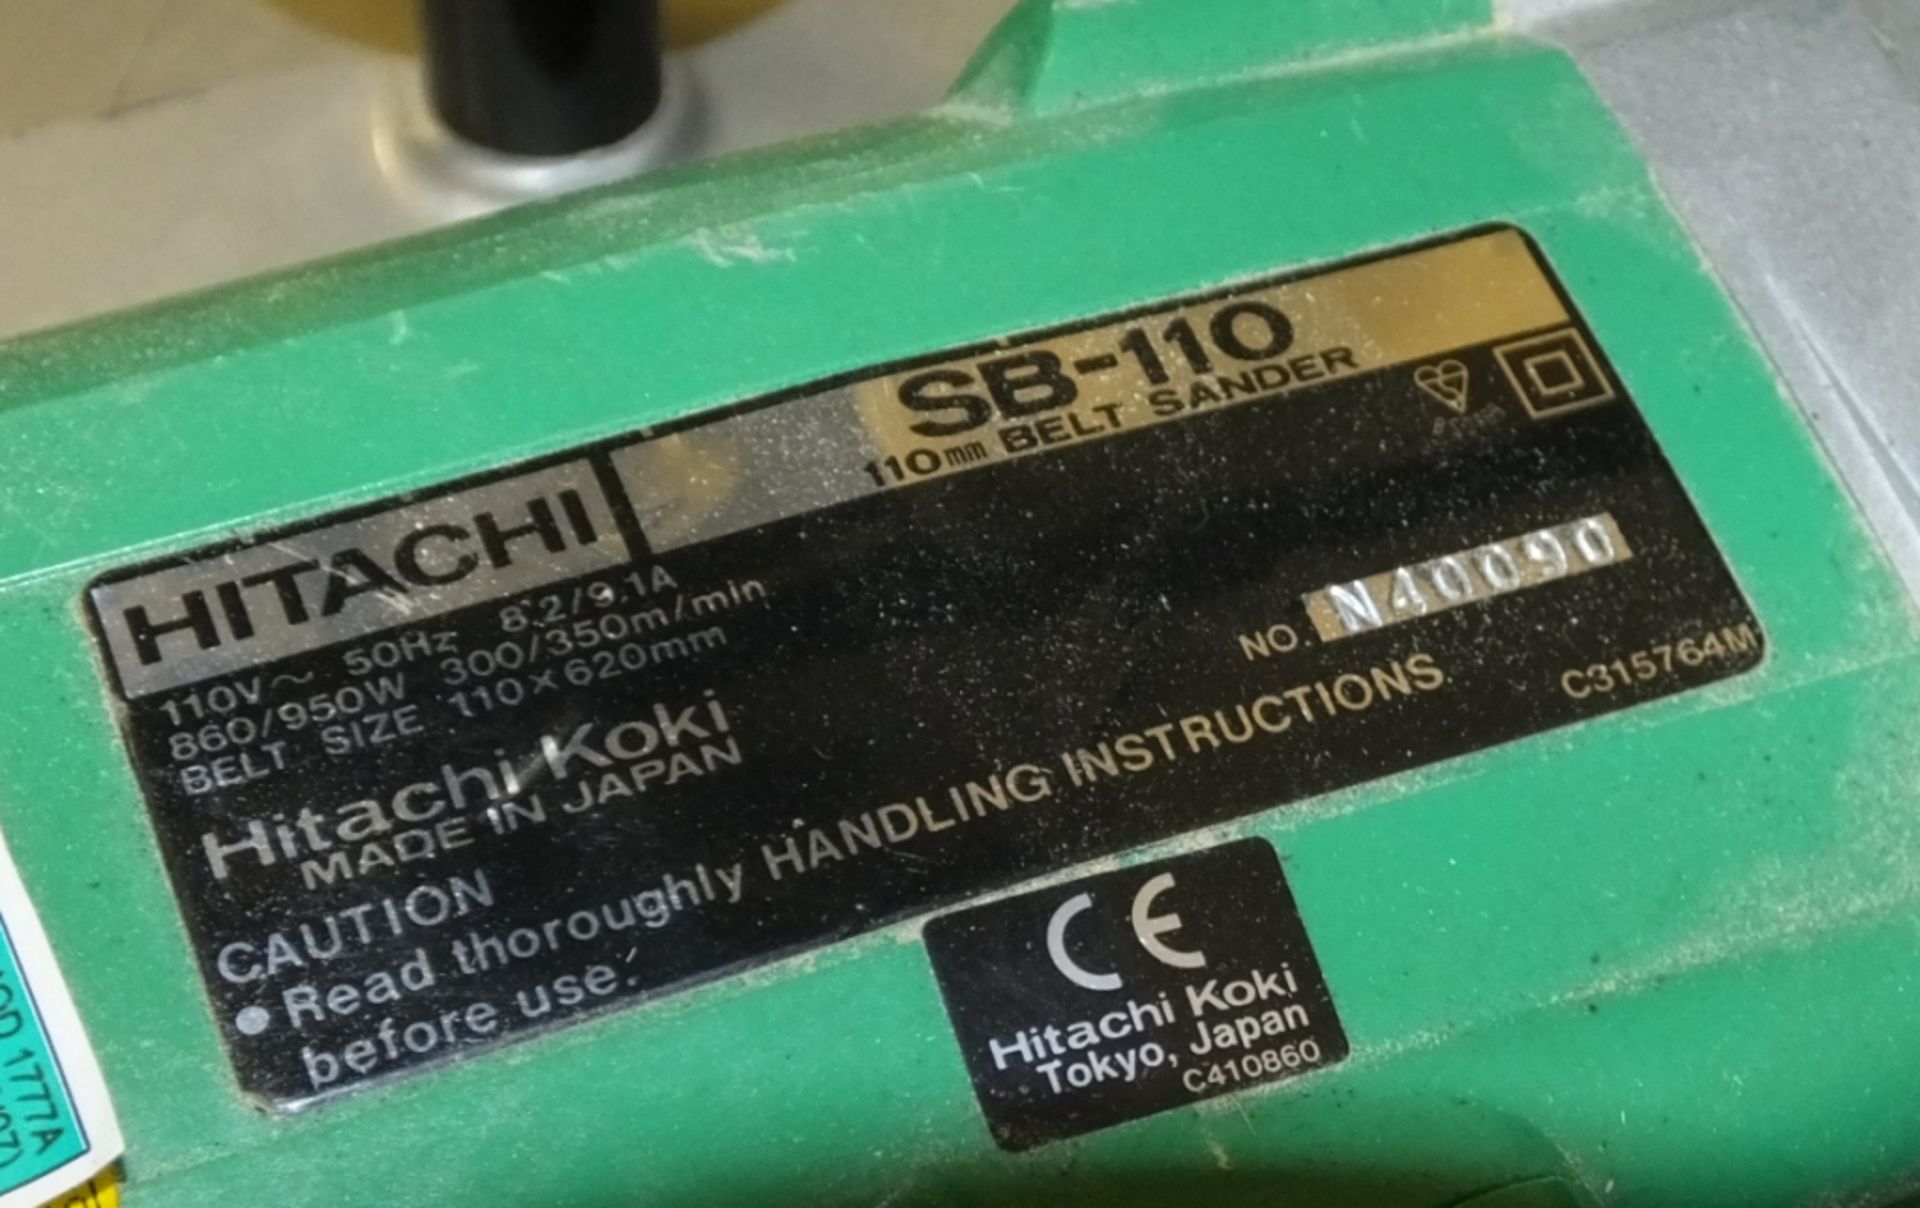 Hitachi SB-110 Belt sander in metal carry case - Image 3 of 3